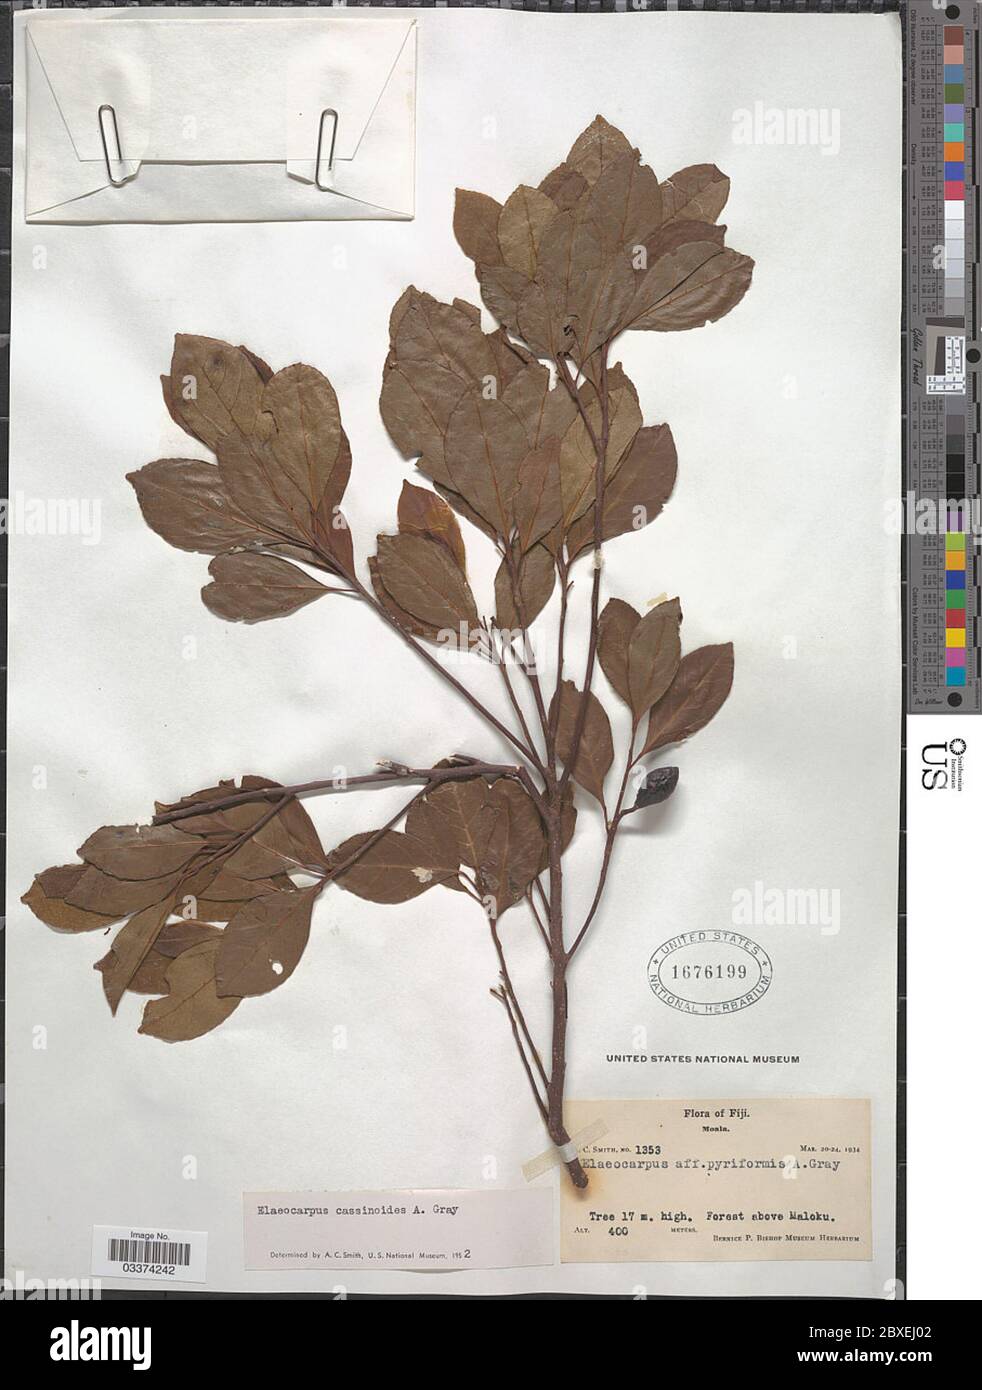 Elaeocarpus cassinoides A Gray in Wilkes Elaeocarpus cassinoides A Gray in Wilkes. Stock Photo